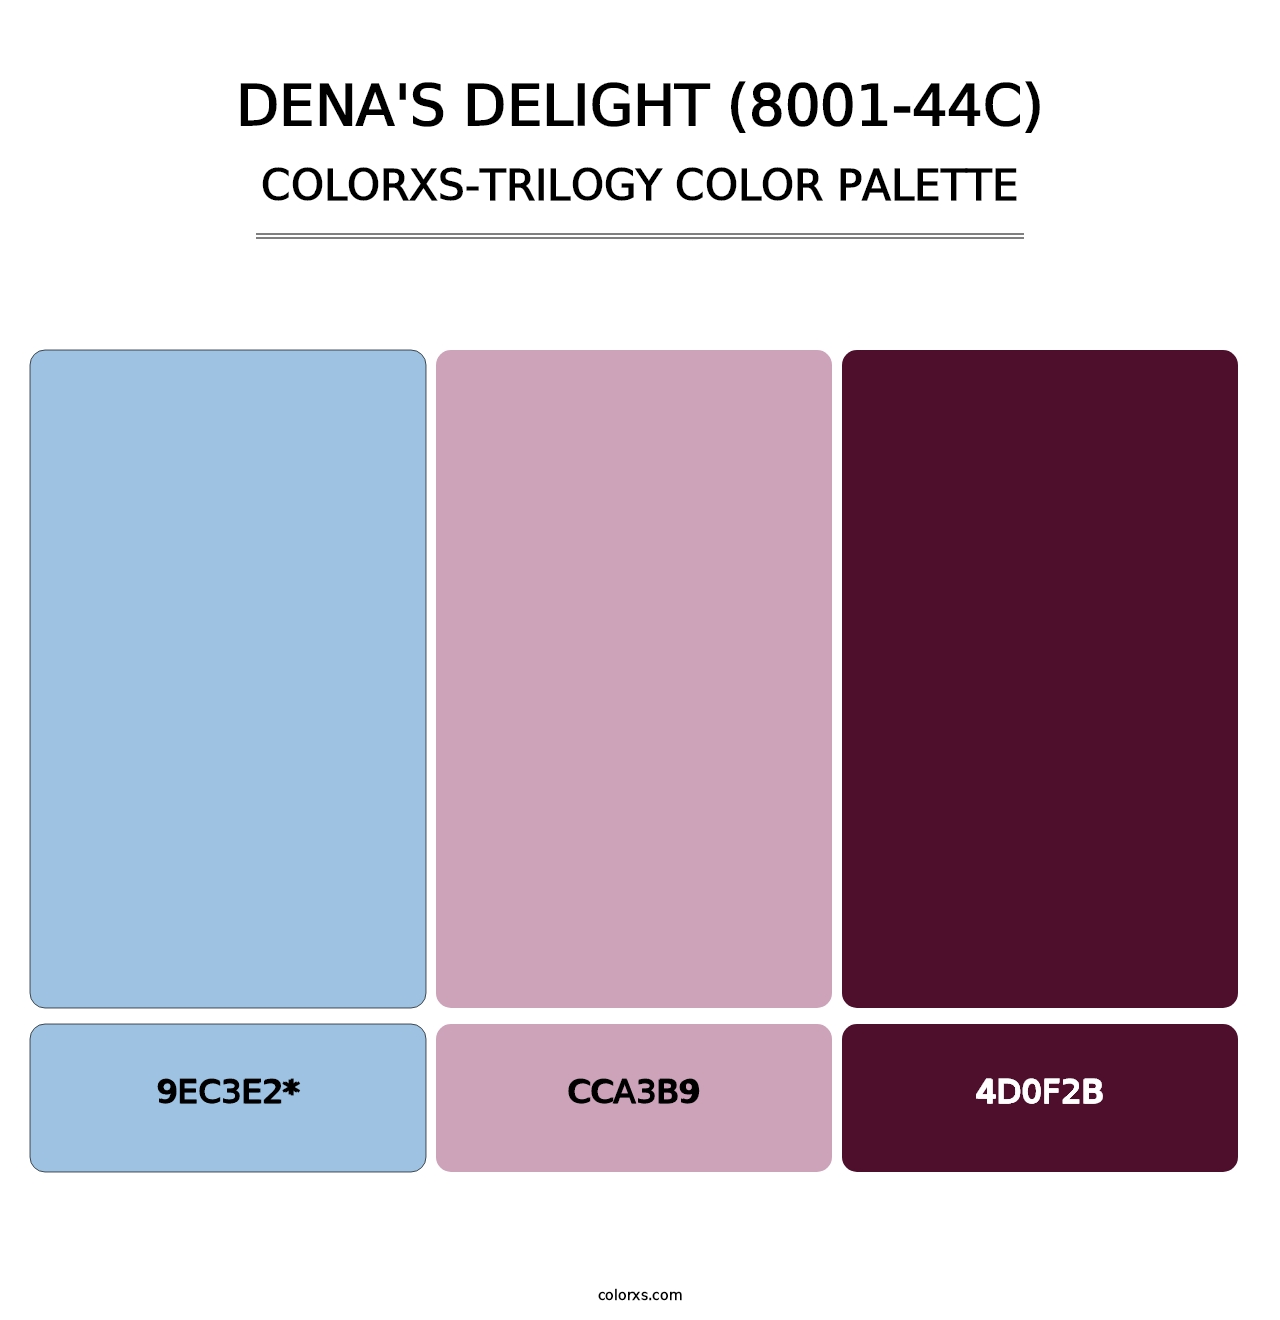 Dena's Delight (8001-44C) - Colorxs Trilogy Palette